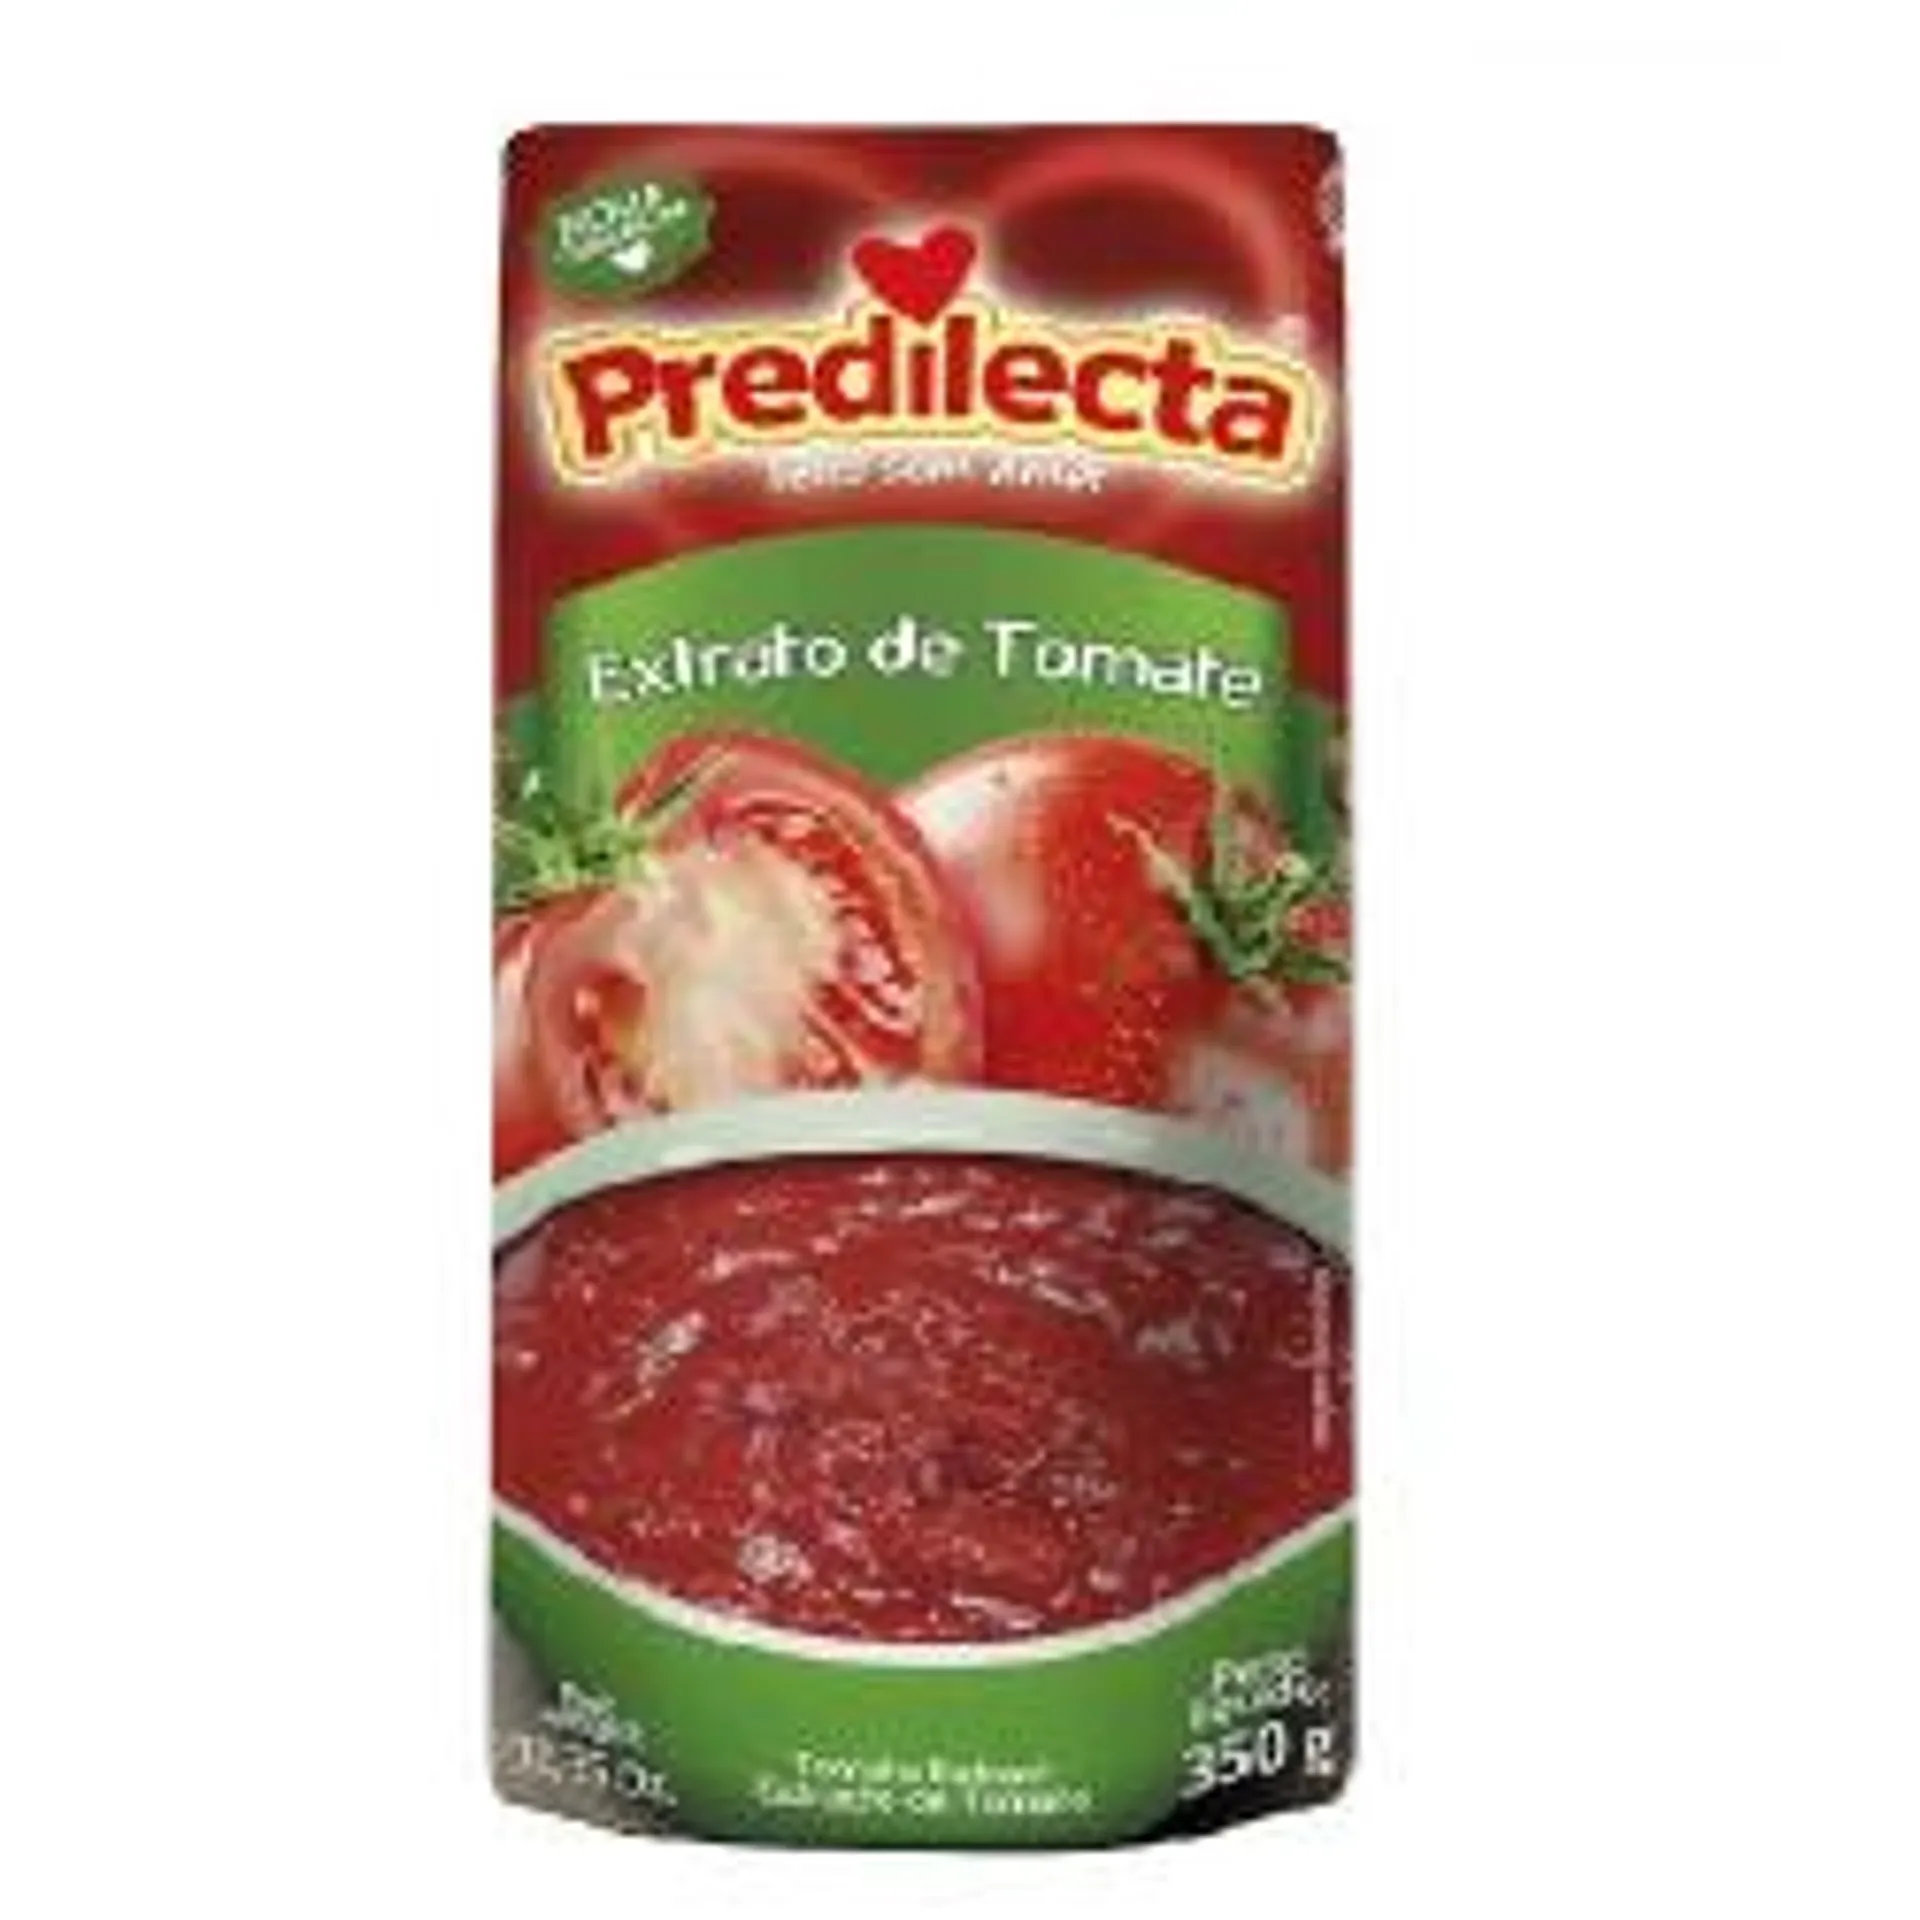 Extr Tomate Predilecta Sc 300gr